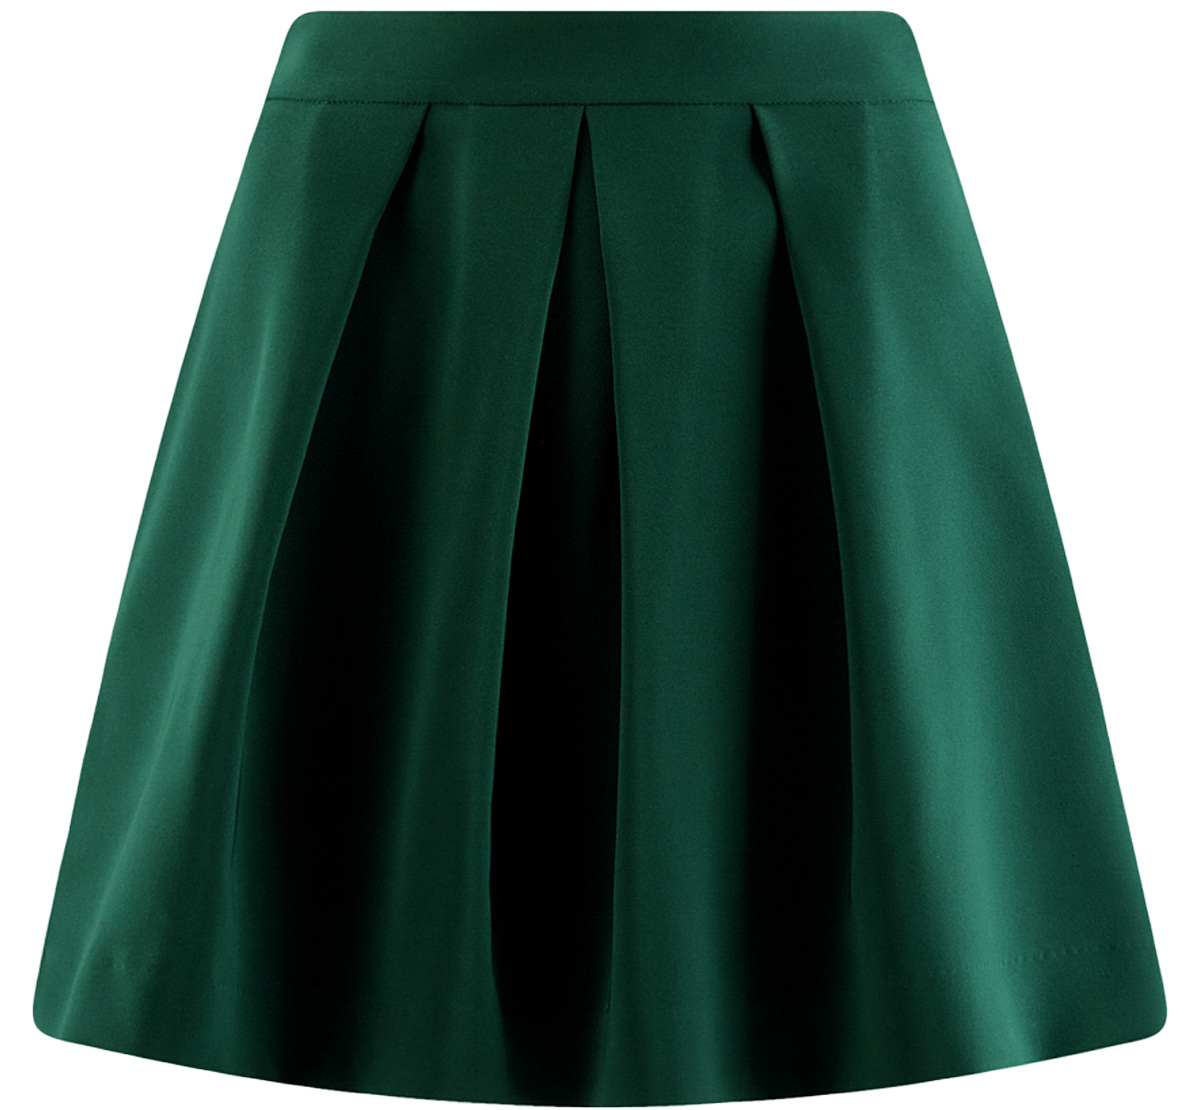 Темно зеленая юбка. Зеленая пышная юбка. Юбка темно зеленая ГОБЛИНКОР. Купить юбку темно зеленый девочке.